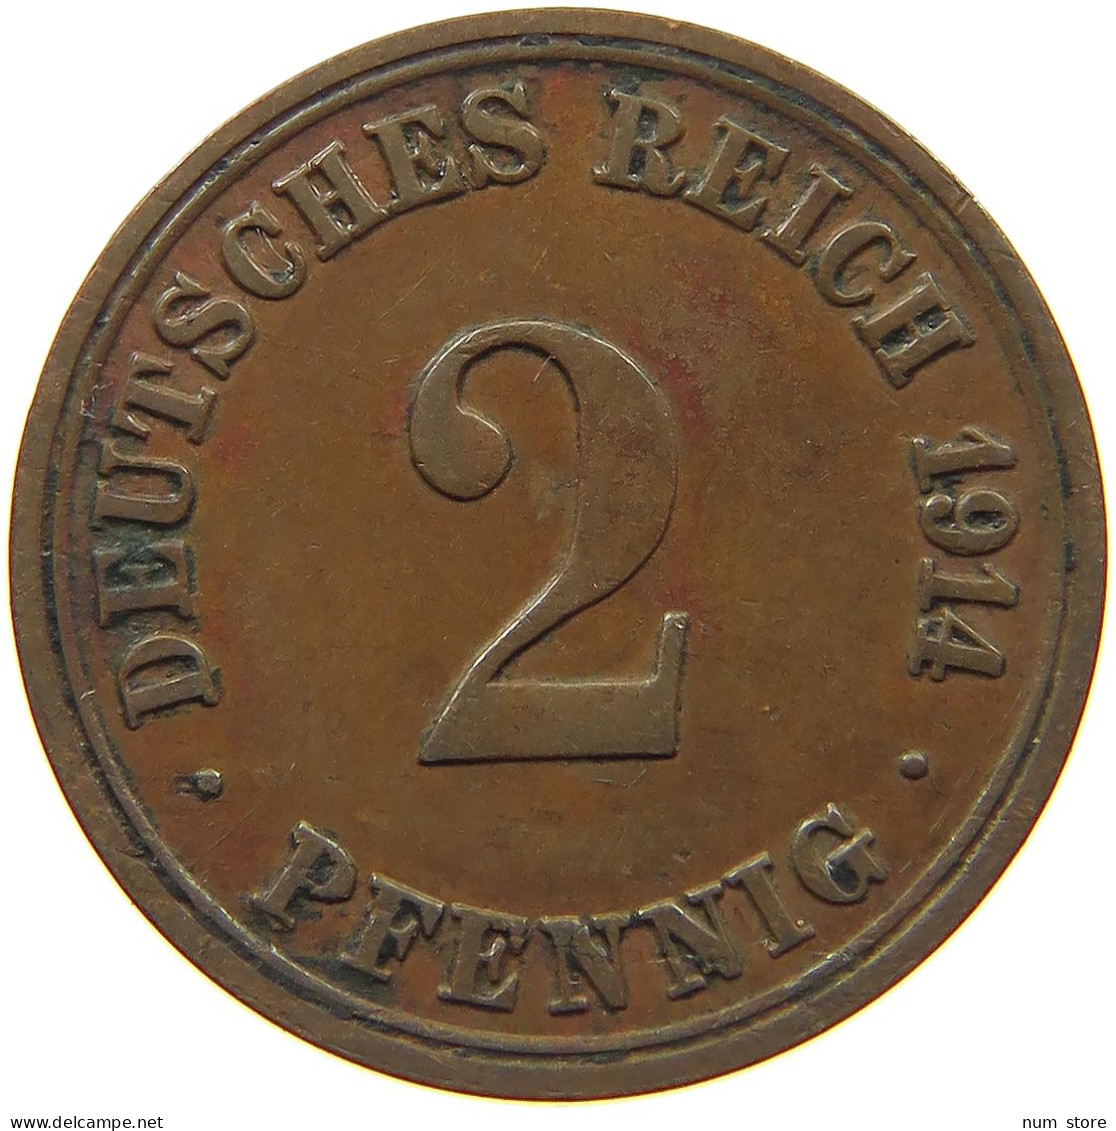 GERMANY EMPIRE 2 PFENNIG 1914 A #s068 0451 - 2 Pfennig